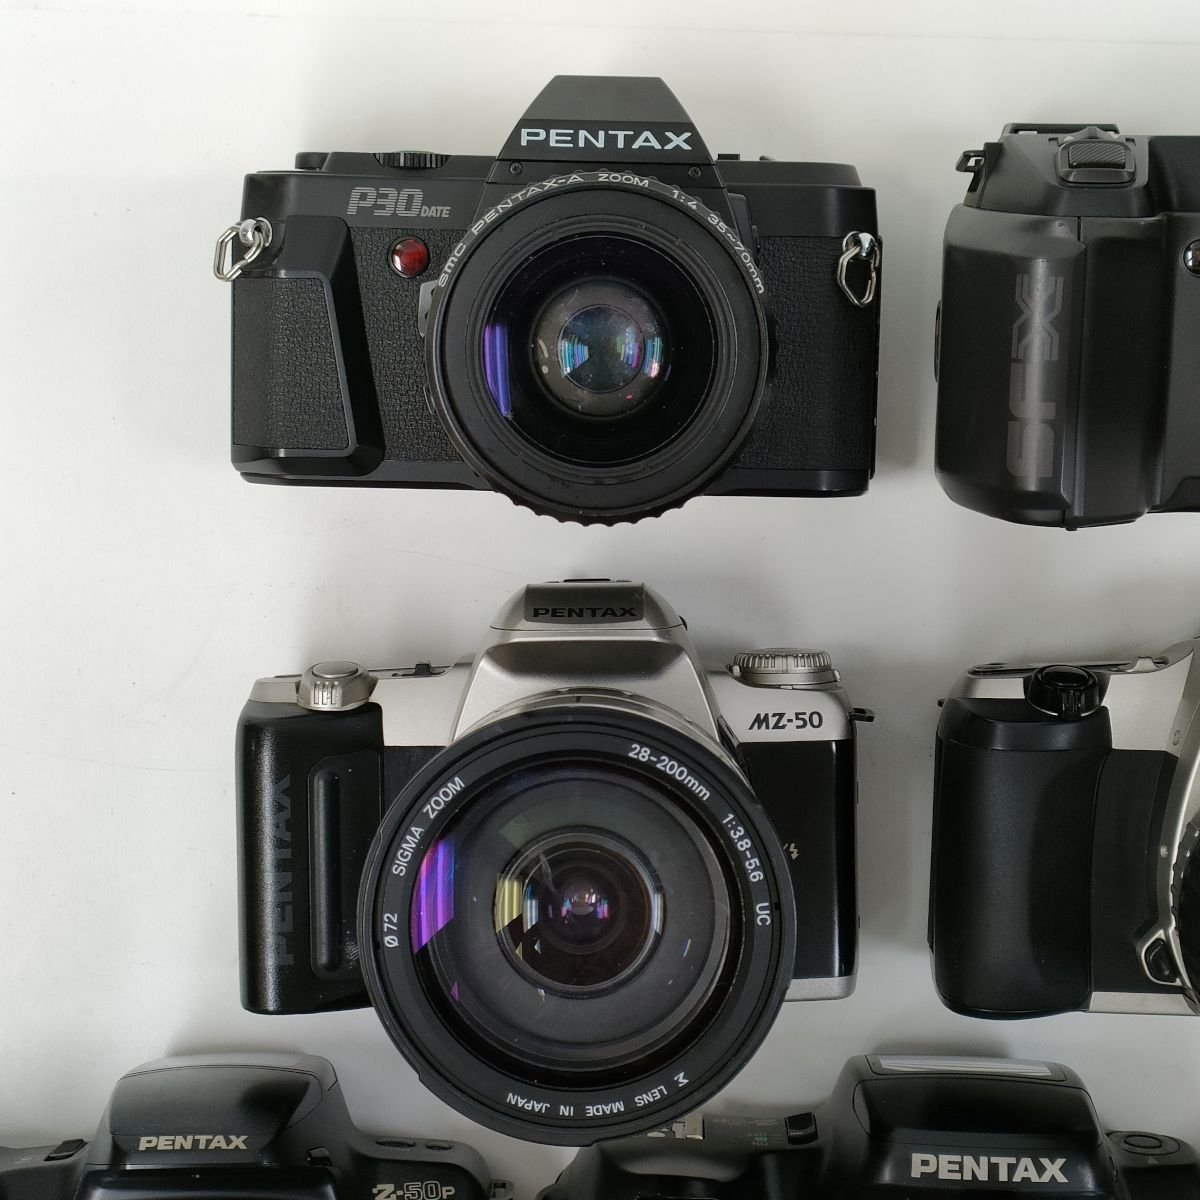 PENTAX ペンタックス P30 DATE - フィルムカメラ